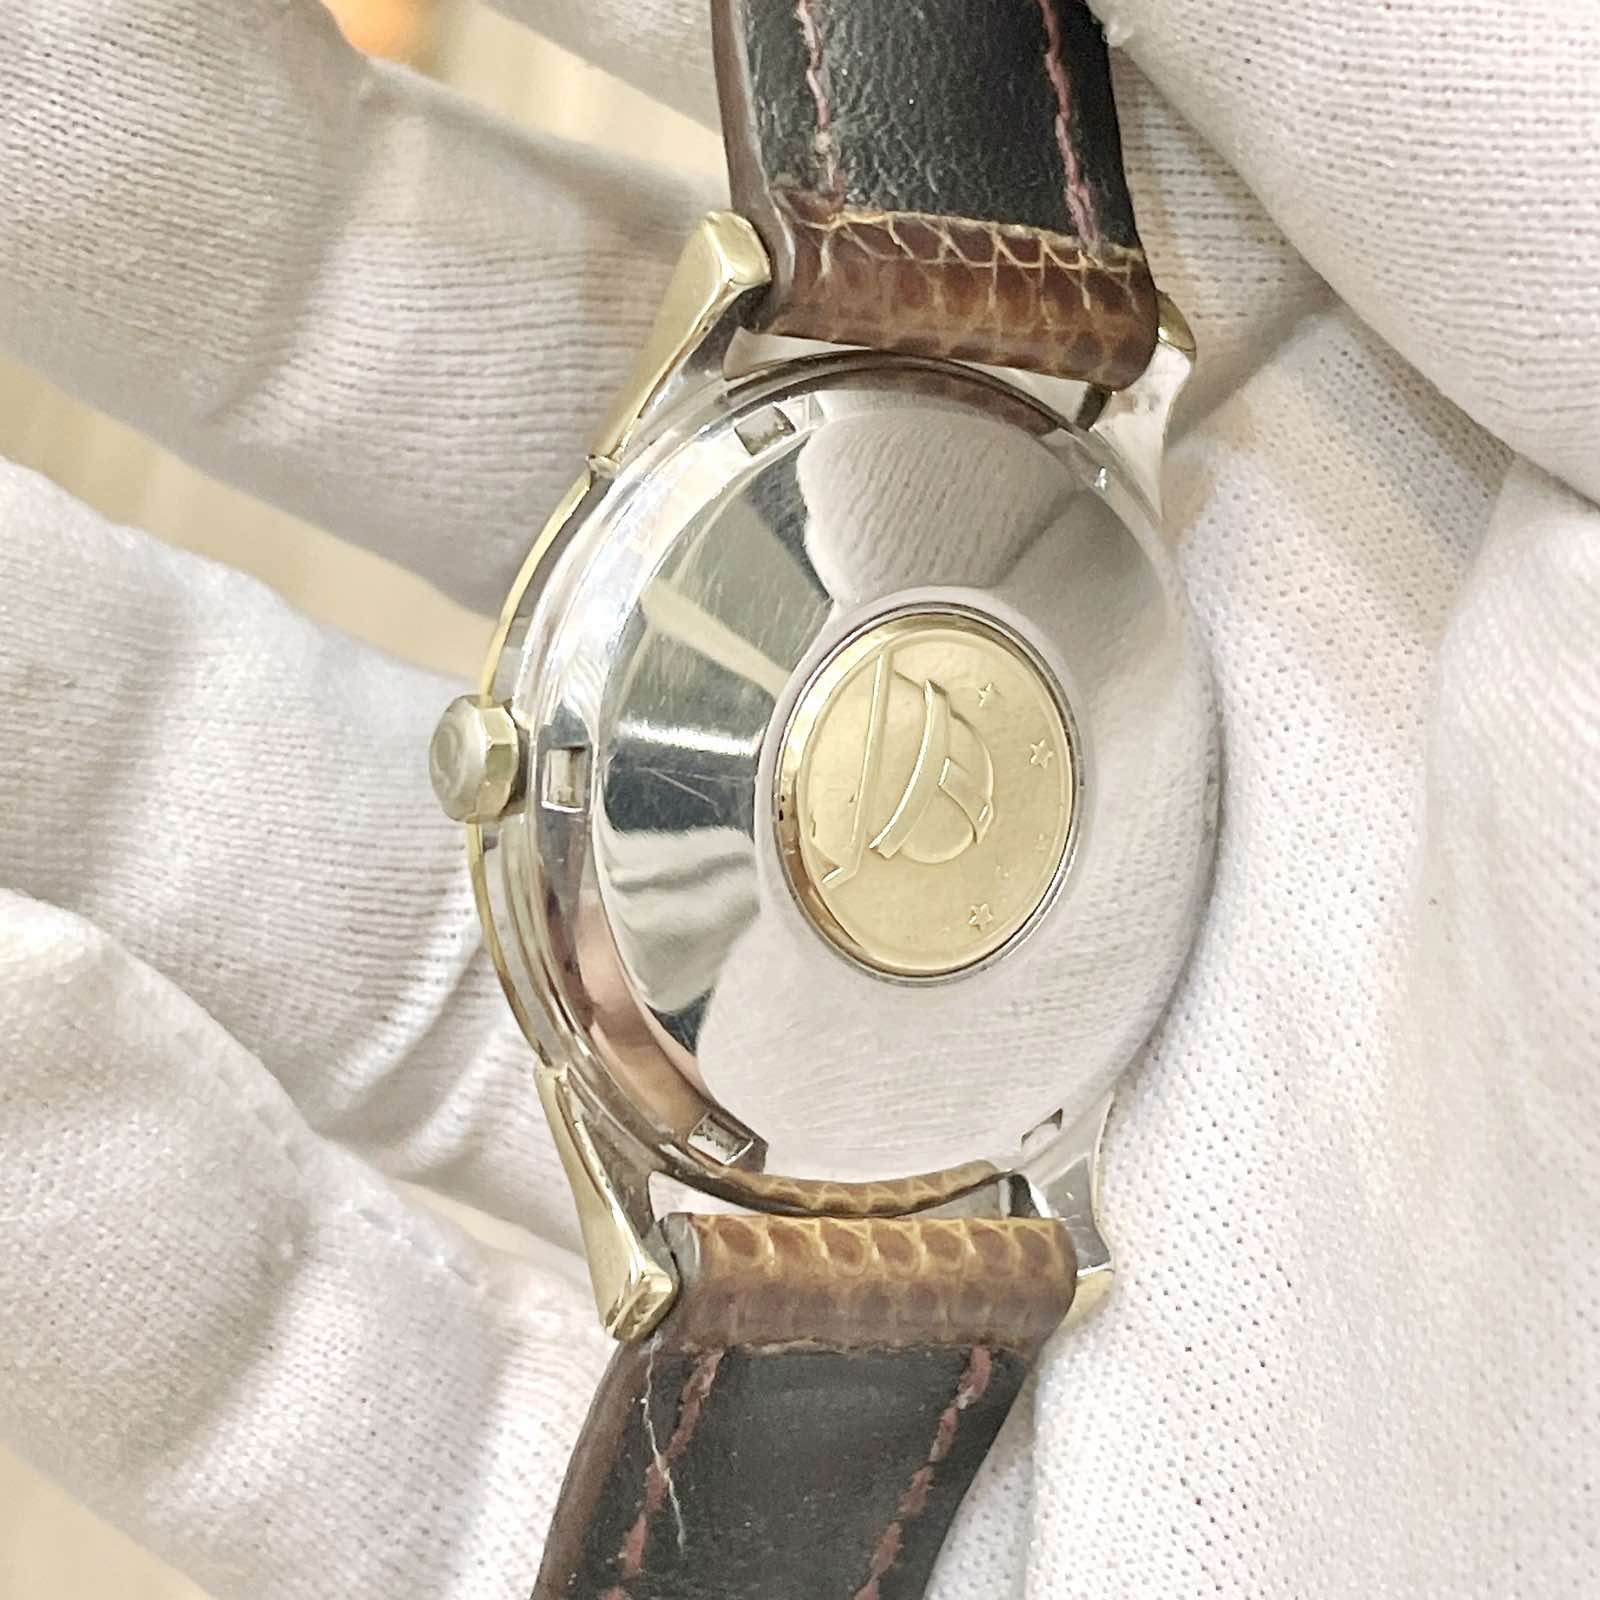 Đồng hồ cổ Omega Constellation Automatic dmi chính hãng Thụy Sĩ với Mặt số Zin 3 kim 1 lịch kết hợp với cọc số nổi rất đẹp.